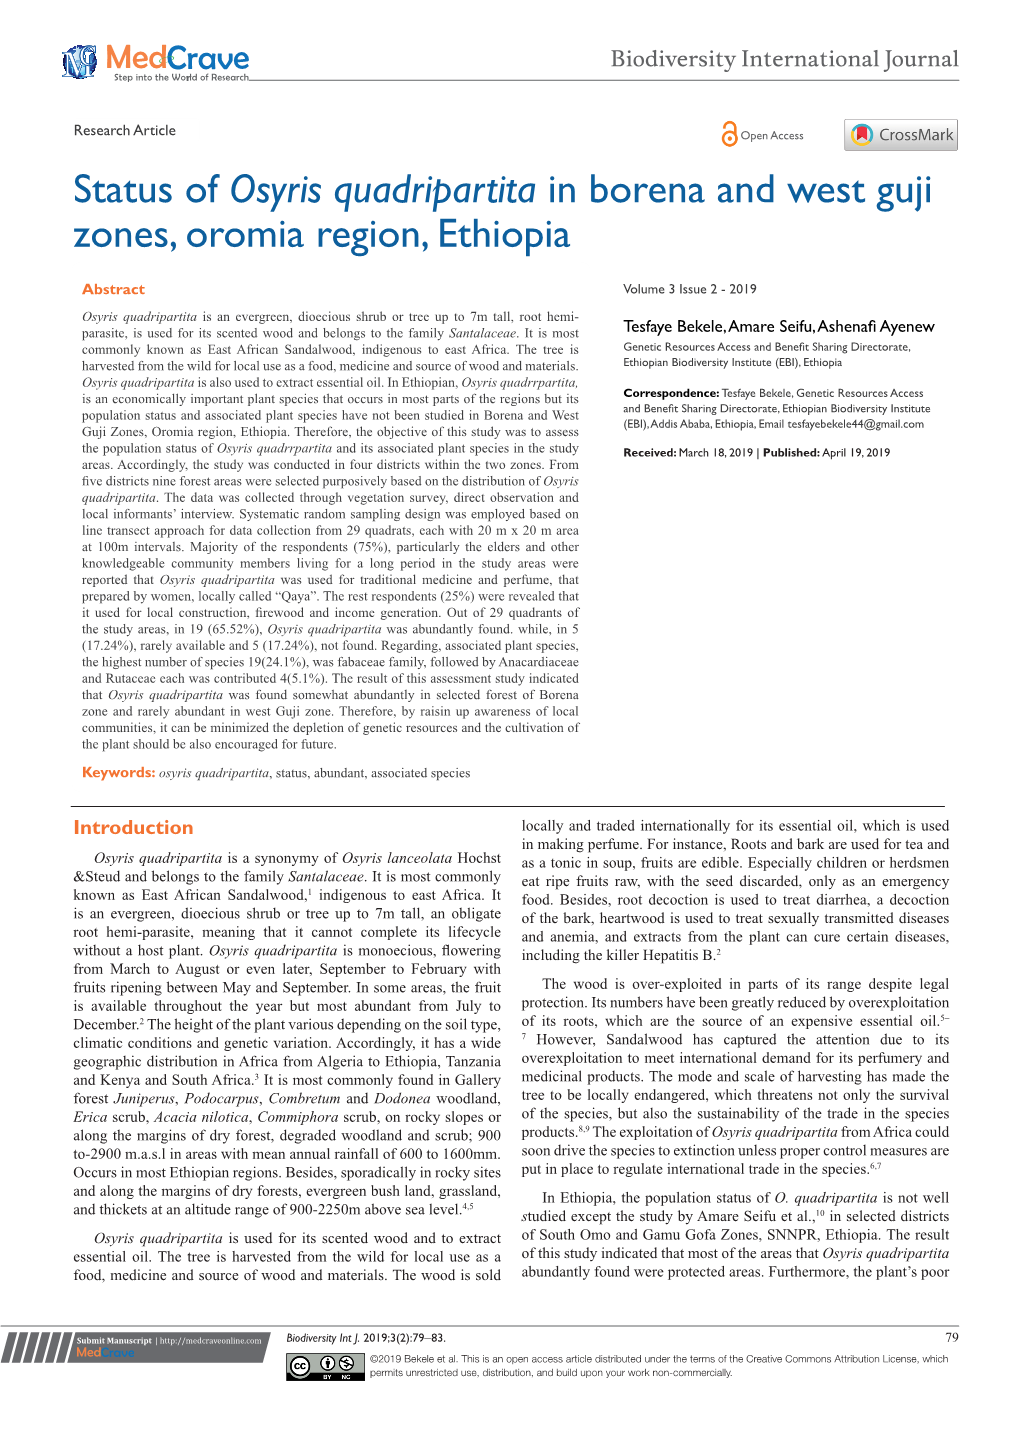 Status of Osyris Quadripartita in Borena and West Guji Zones, Oromia Region, Ethiopia